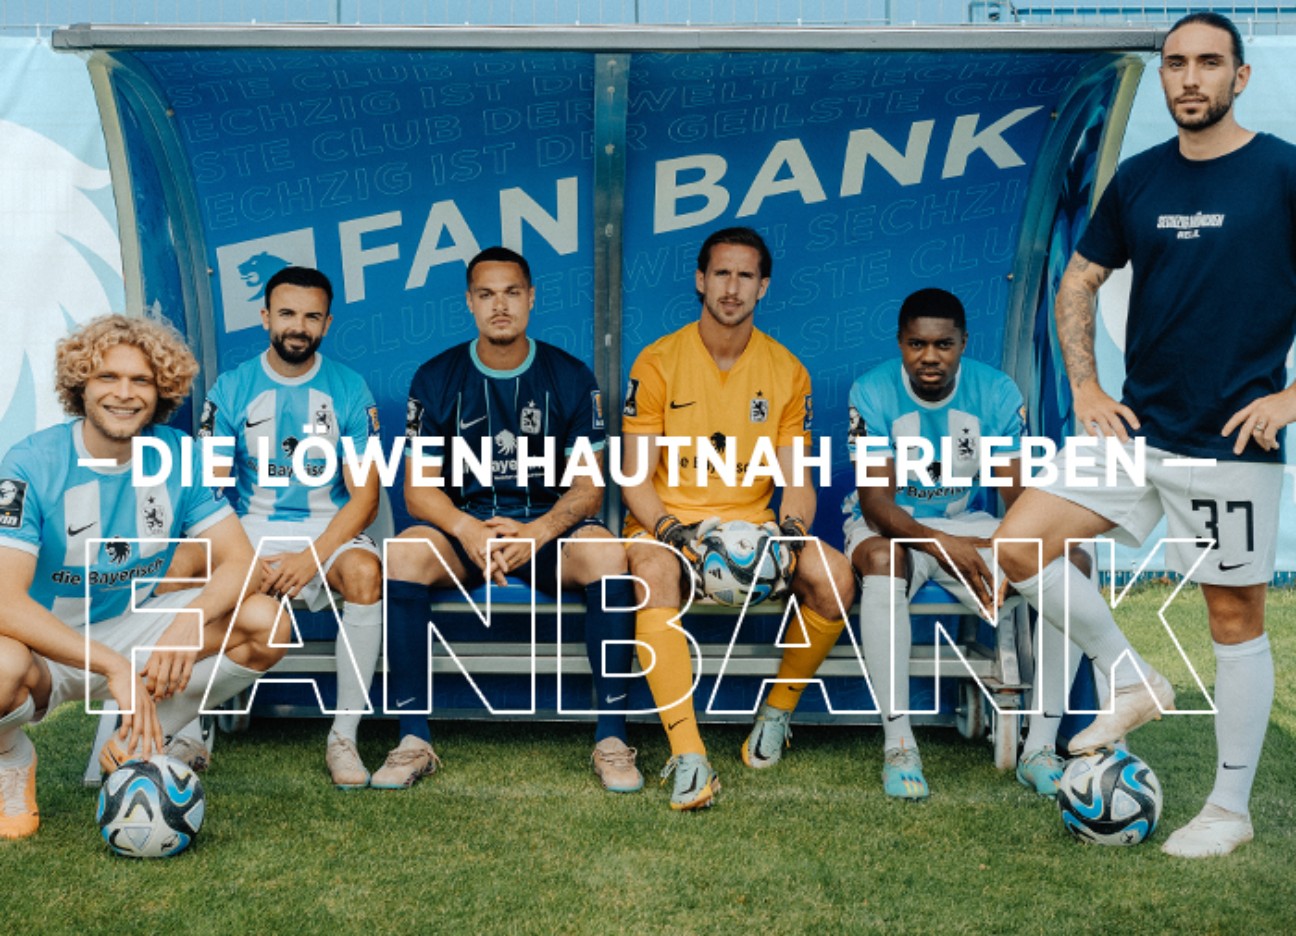 Mehrere Spieler des TSV 1860 auf einer Bank am Spielfeldrand mit Schriftzug "Fanbank"